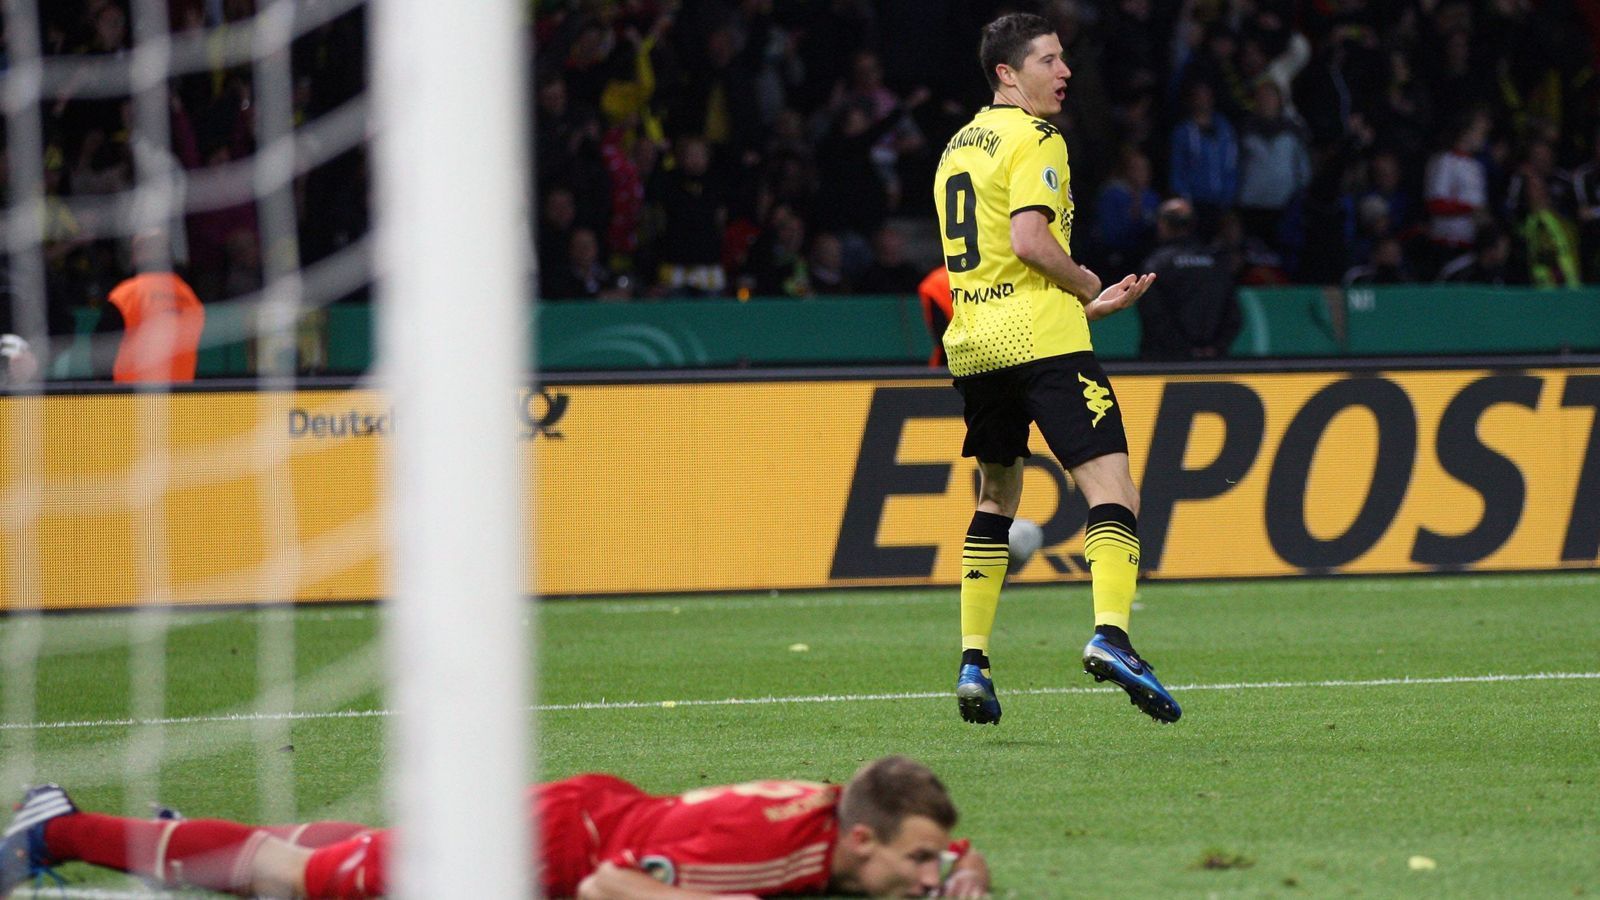 
                <strong>Borussia Dortmund - FC Bayern München 5:2 (12. Mai 2012)</strong><br>
                In der Saison 2011/12 schafften es die Bayern bis ins Finale, um sich dann im Berliner Olympiastadion von Borussia Dortmund demütigen zu lassen. Der damalige BVB-Torjäger Robert Lewandowski und seine Kollegen nahmen den FCB mit 5:2 auseinander. Bereits zur Pause führten die Dortmunder mit 3:1, nach der Halbzeit legte Lewandowski seinen zweiten und dritten Treffer des Abends nach und wurde somit zum Schreckgespenst der Münchner.
              